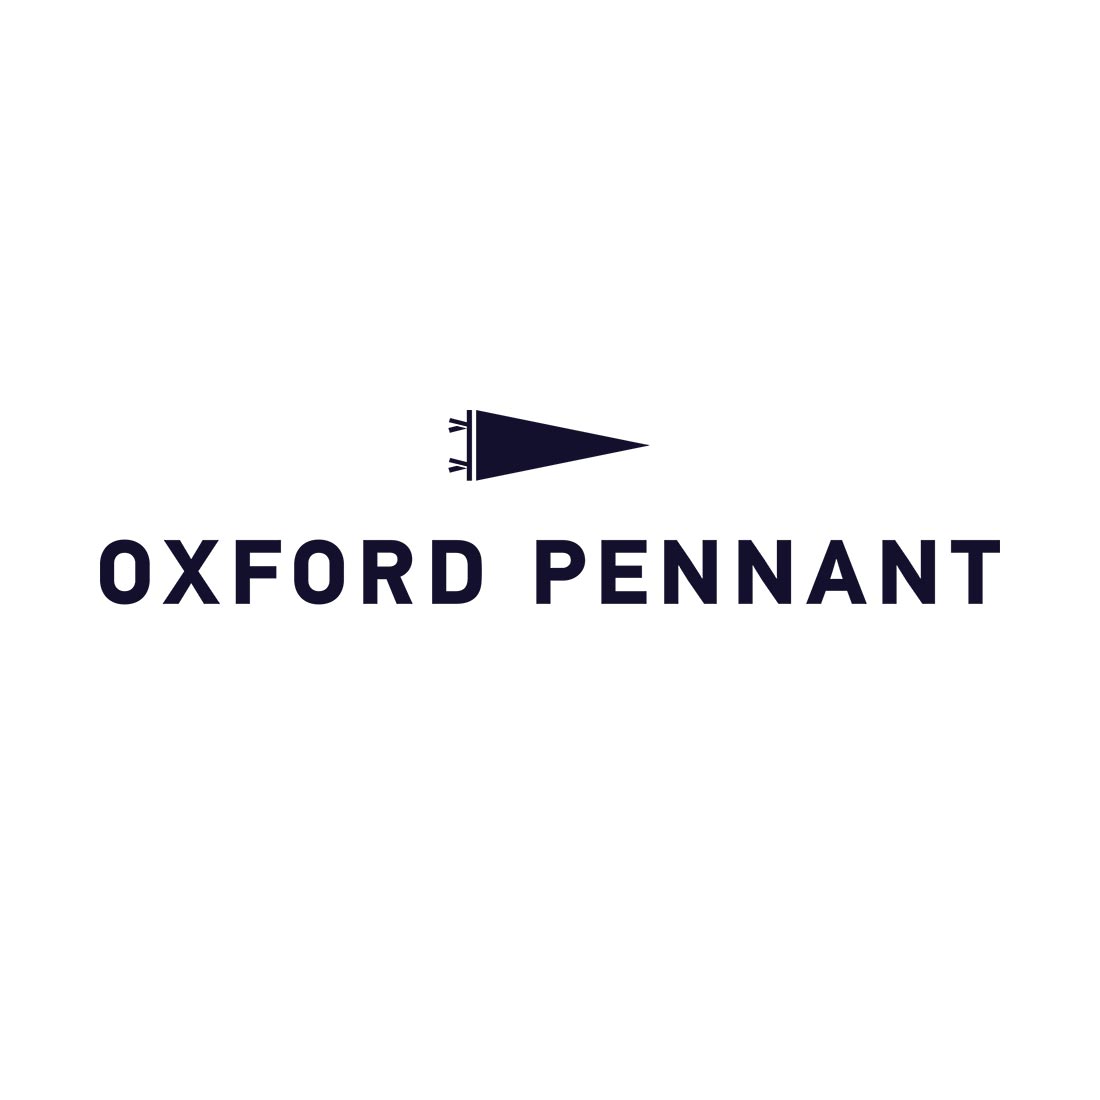 Oxford Pennant at REVOLVR